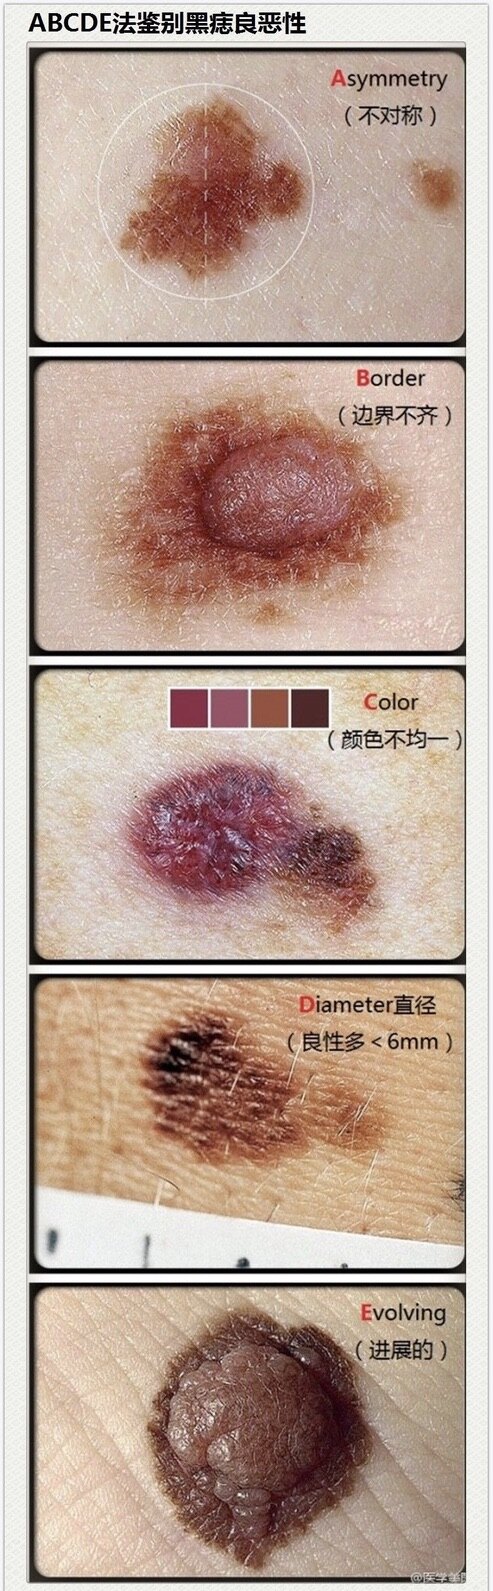 1期黑色素瘤图片 自查图片